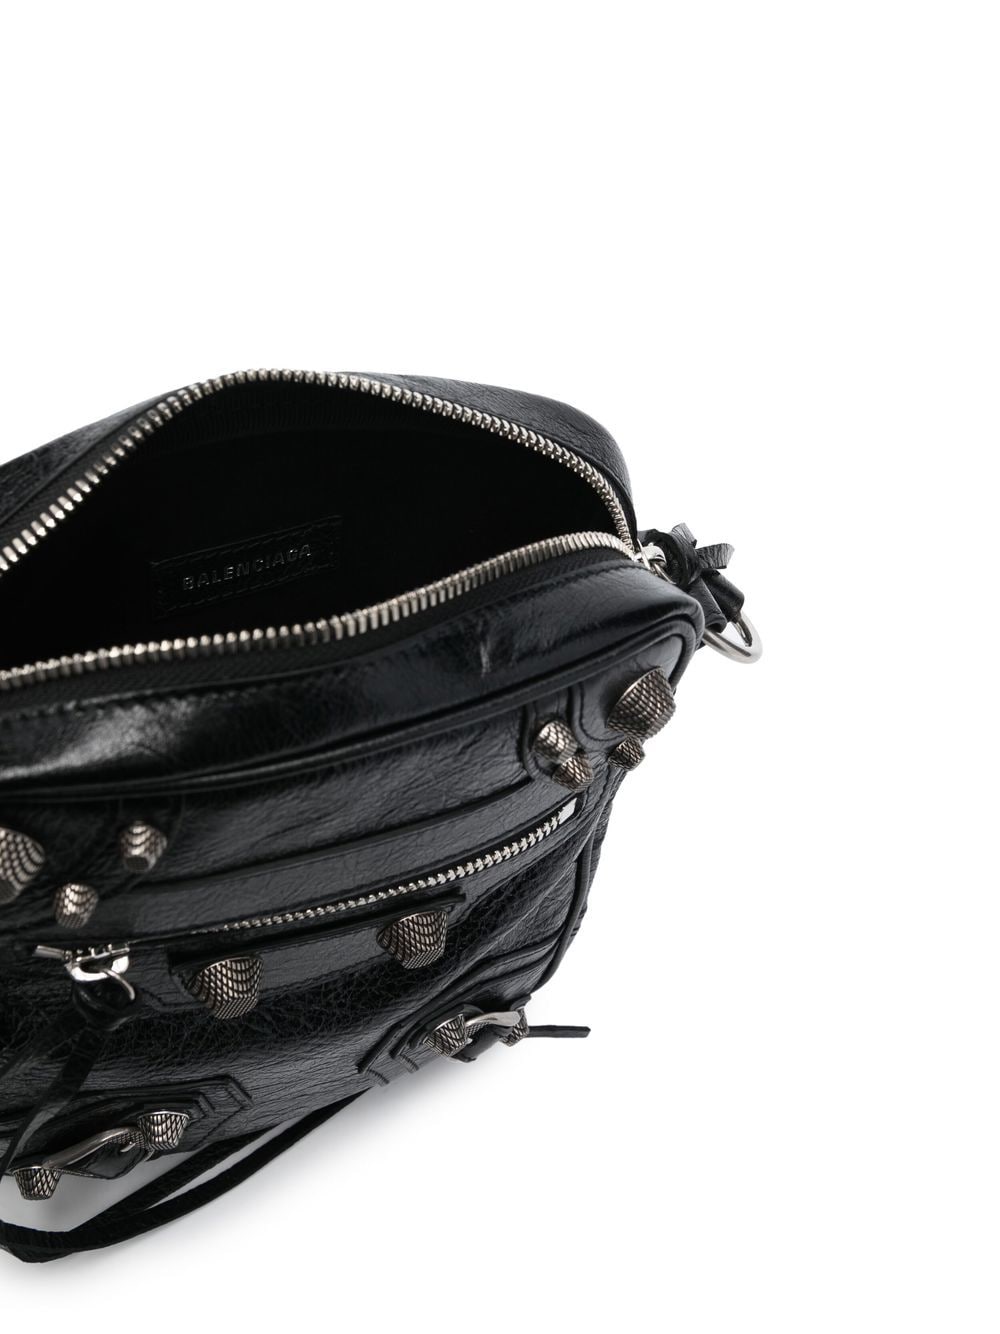 Le Cagole Messenger Handbag - FW23 Collection